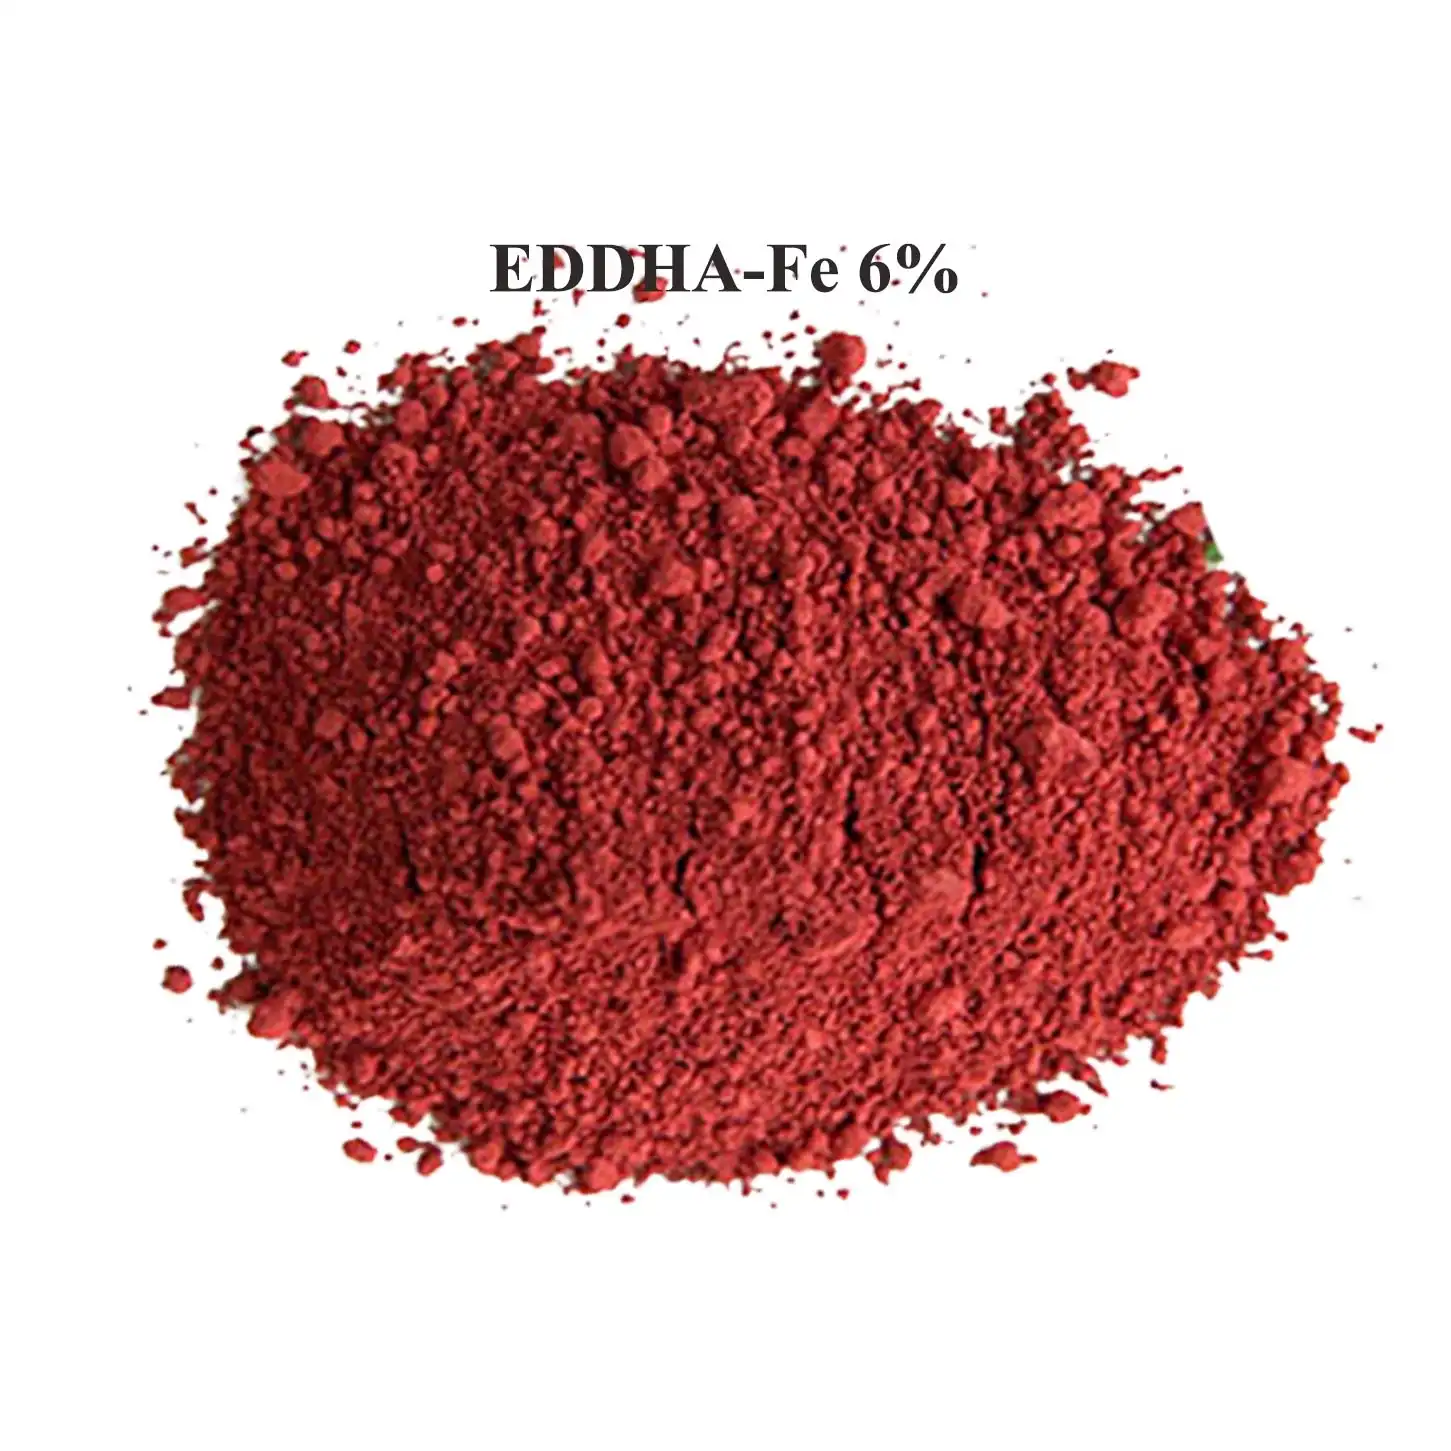 Agricola di ferro chelato 11% 6% fertilizzante Fe EDDHA Fe 6% in polvere con il prezzo di fabbrica